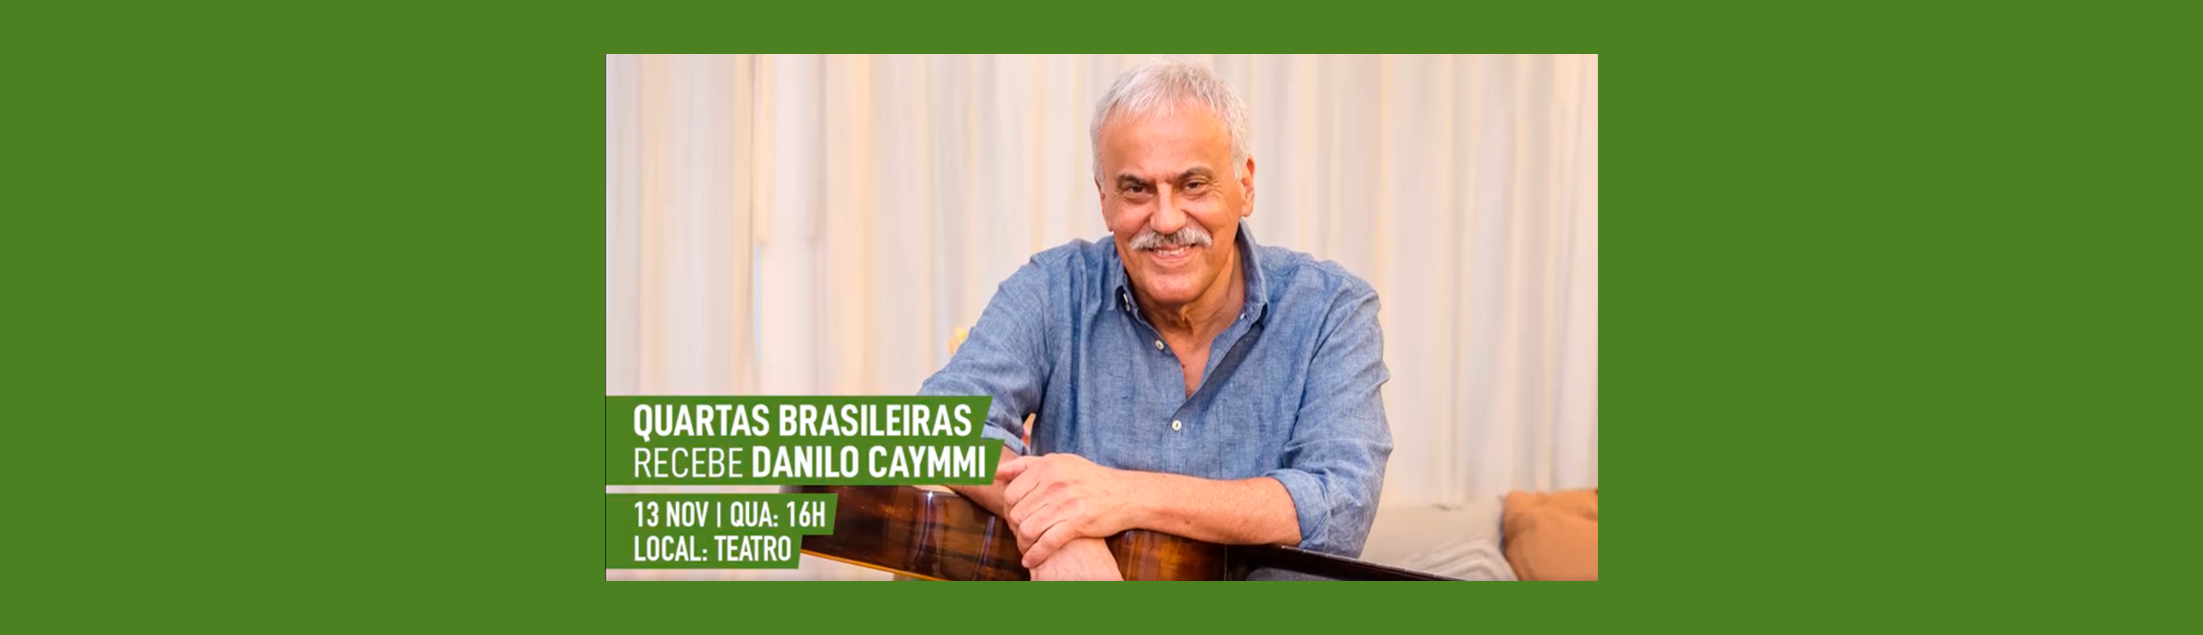 Danilo Caymmi homenageia o pai no projeto Quartas Brasileiras no show 'Viva Caymmi'